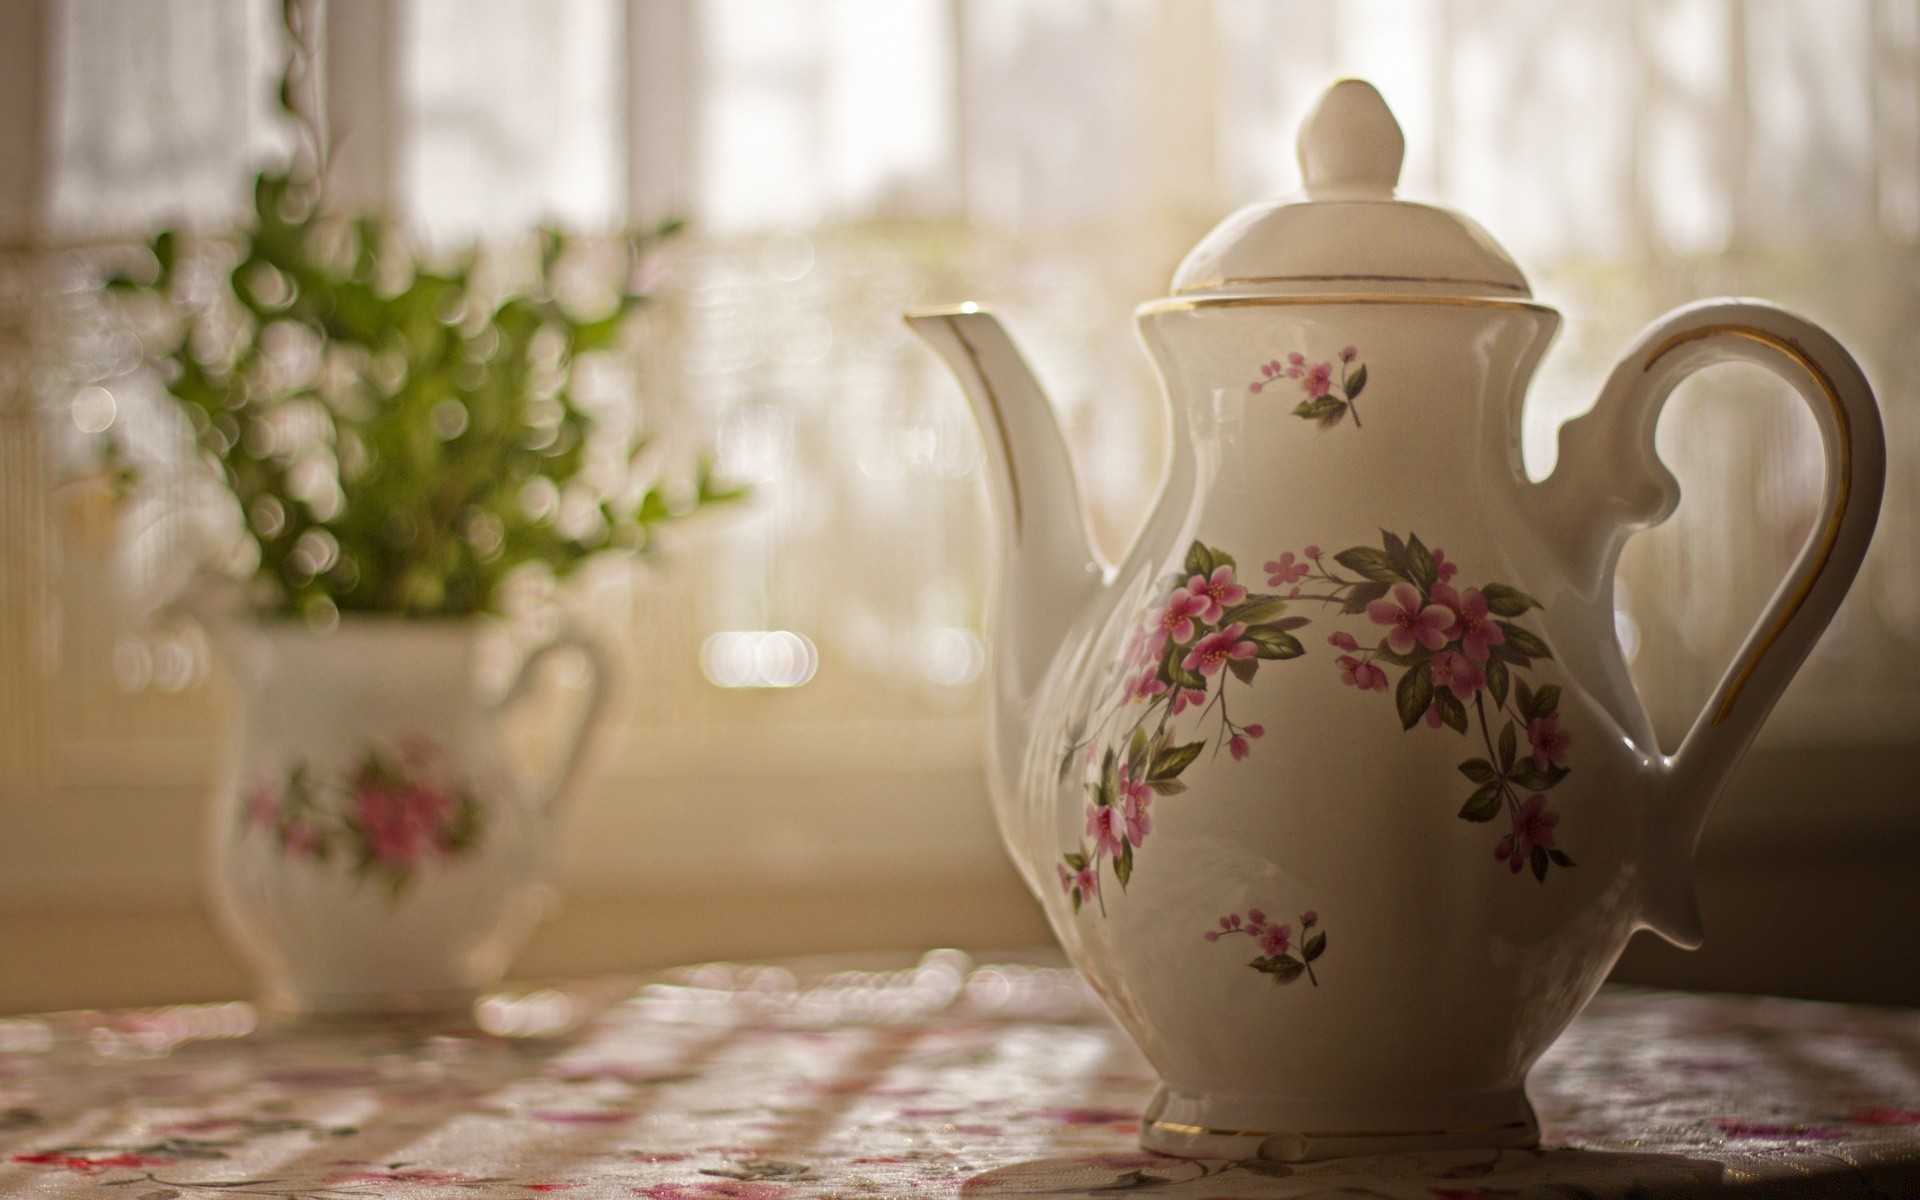 еда и напитки чай кубок чайничек пить фарфор кофе горшок керамический традиционные посуда кружка чашка таблица цветок ваза жбан горячая натюрморт